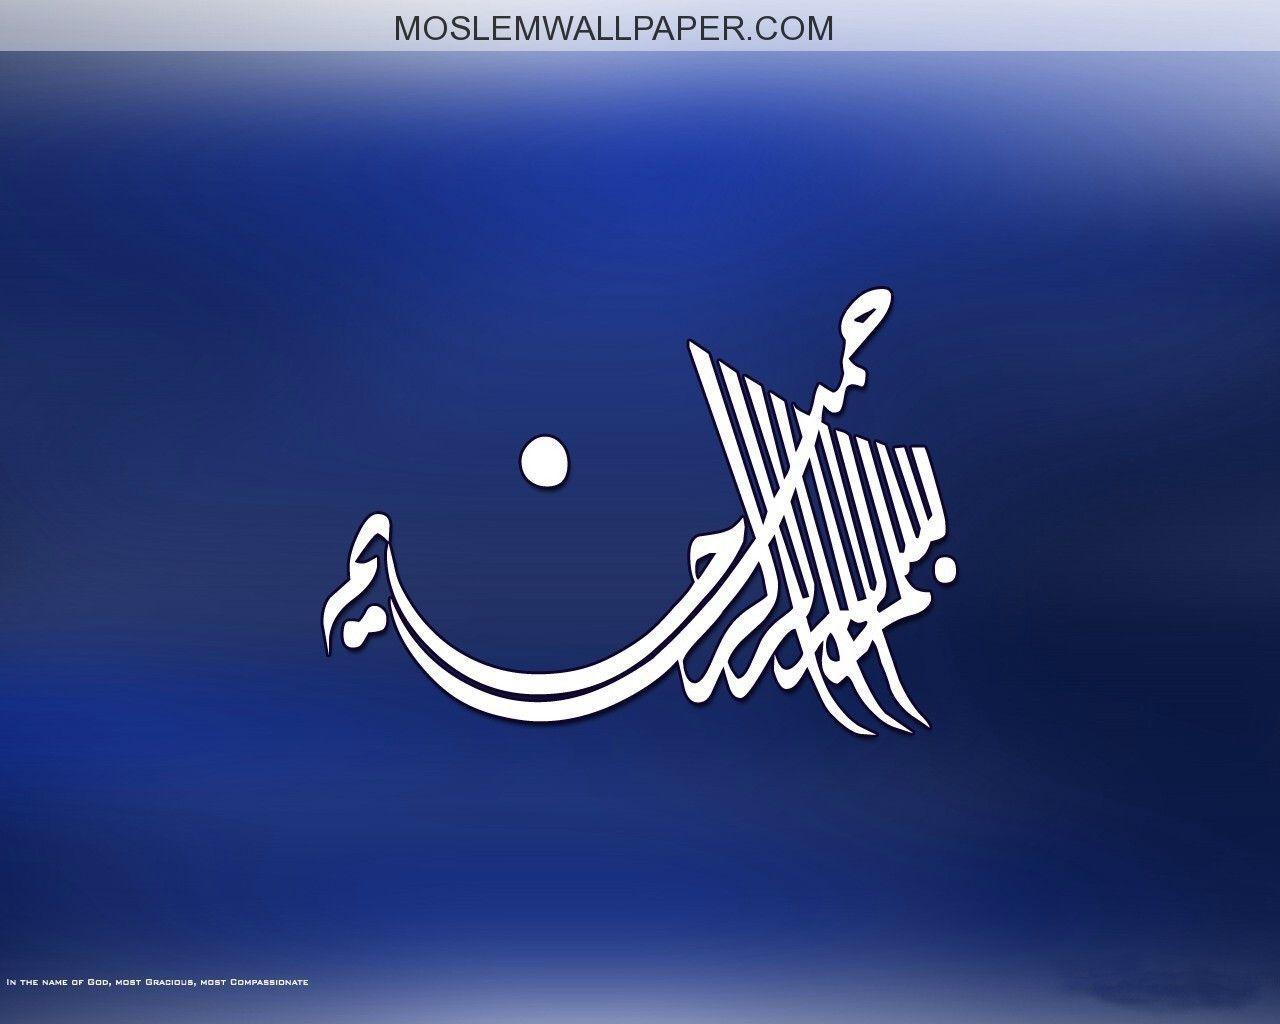 moslemwallpaper com islamic desktop wallpaper bismillah